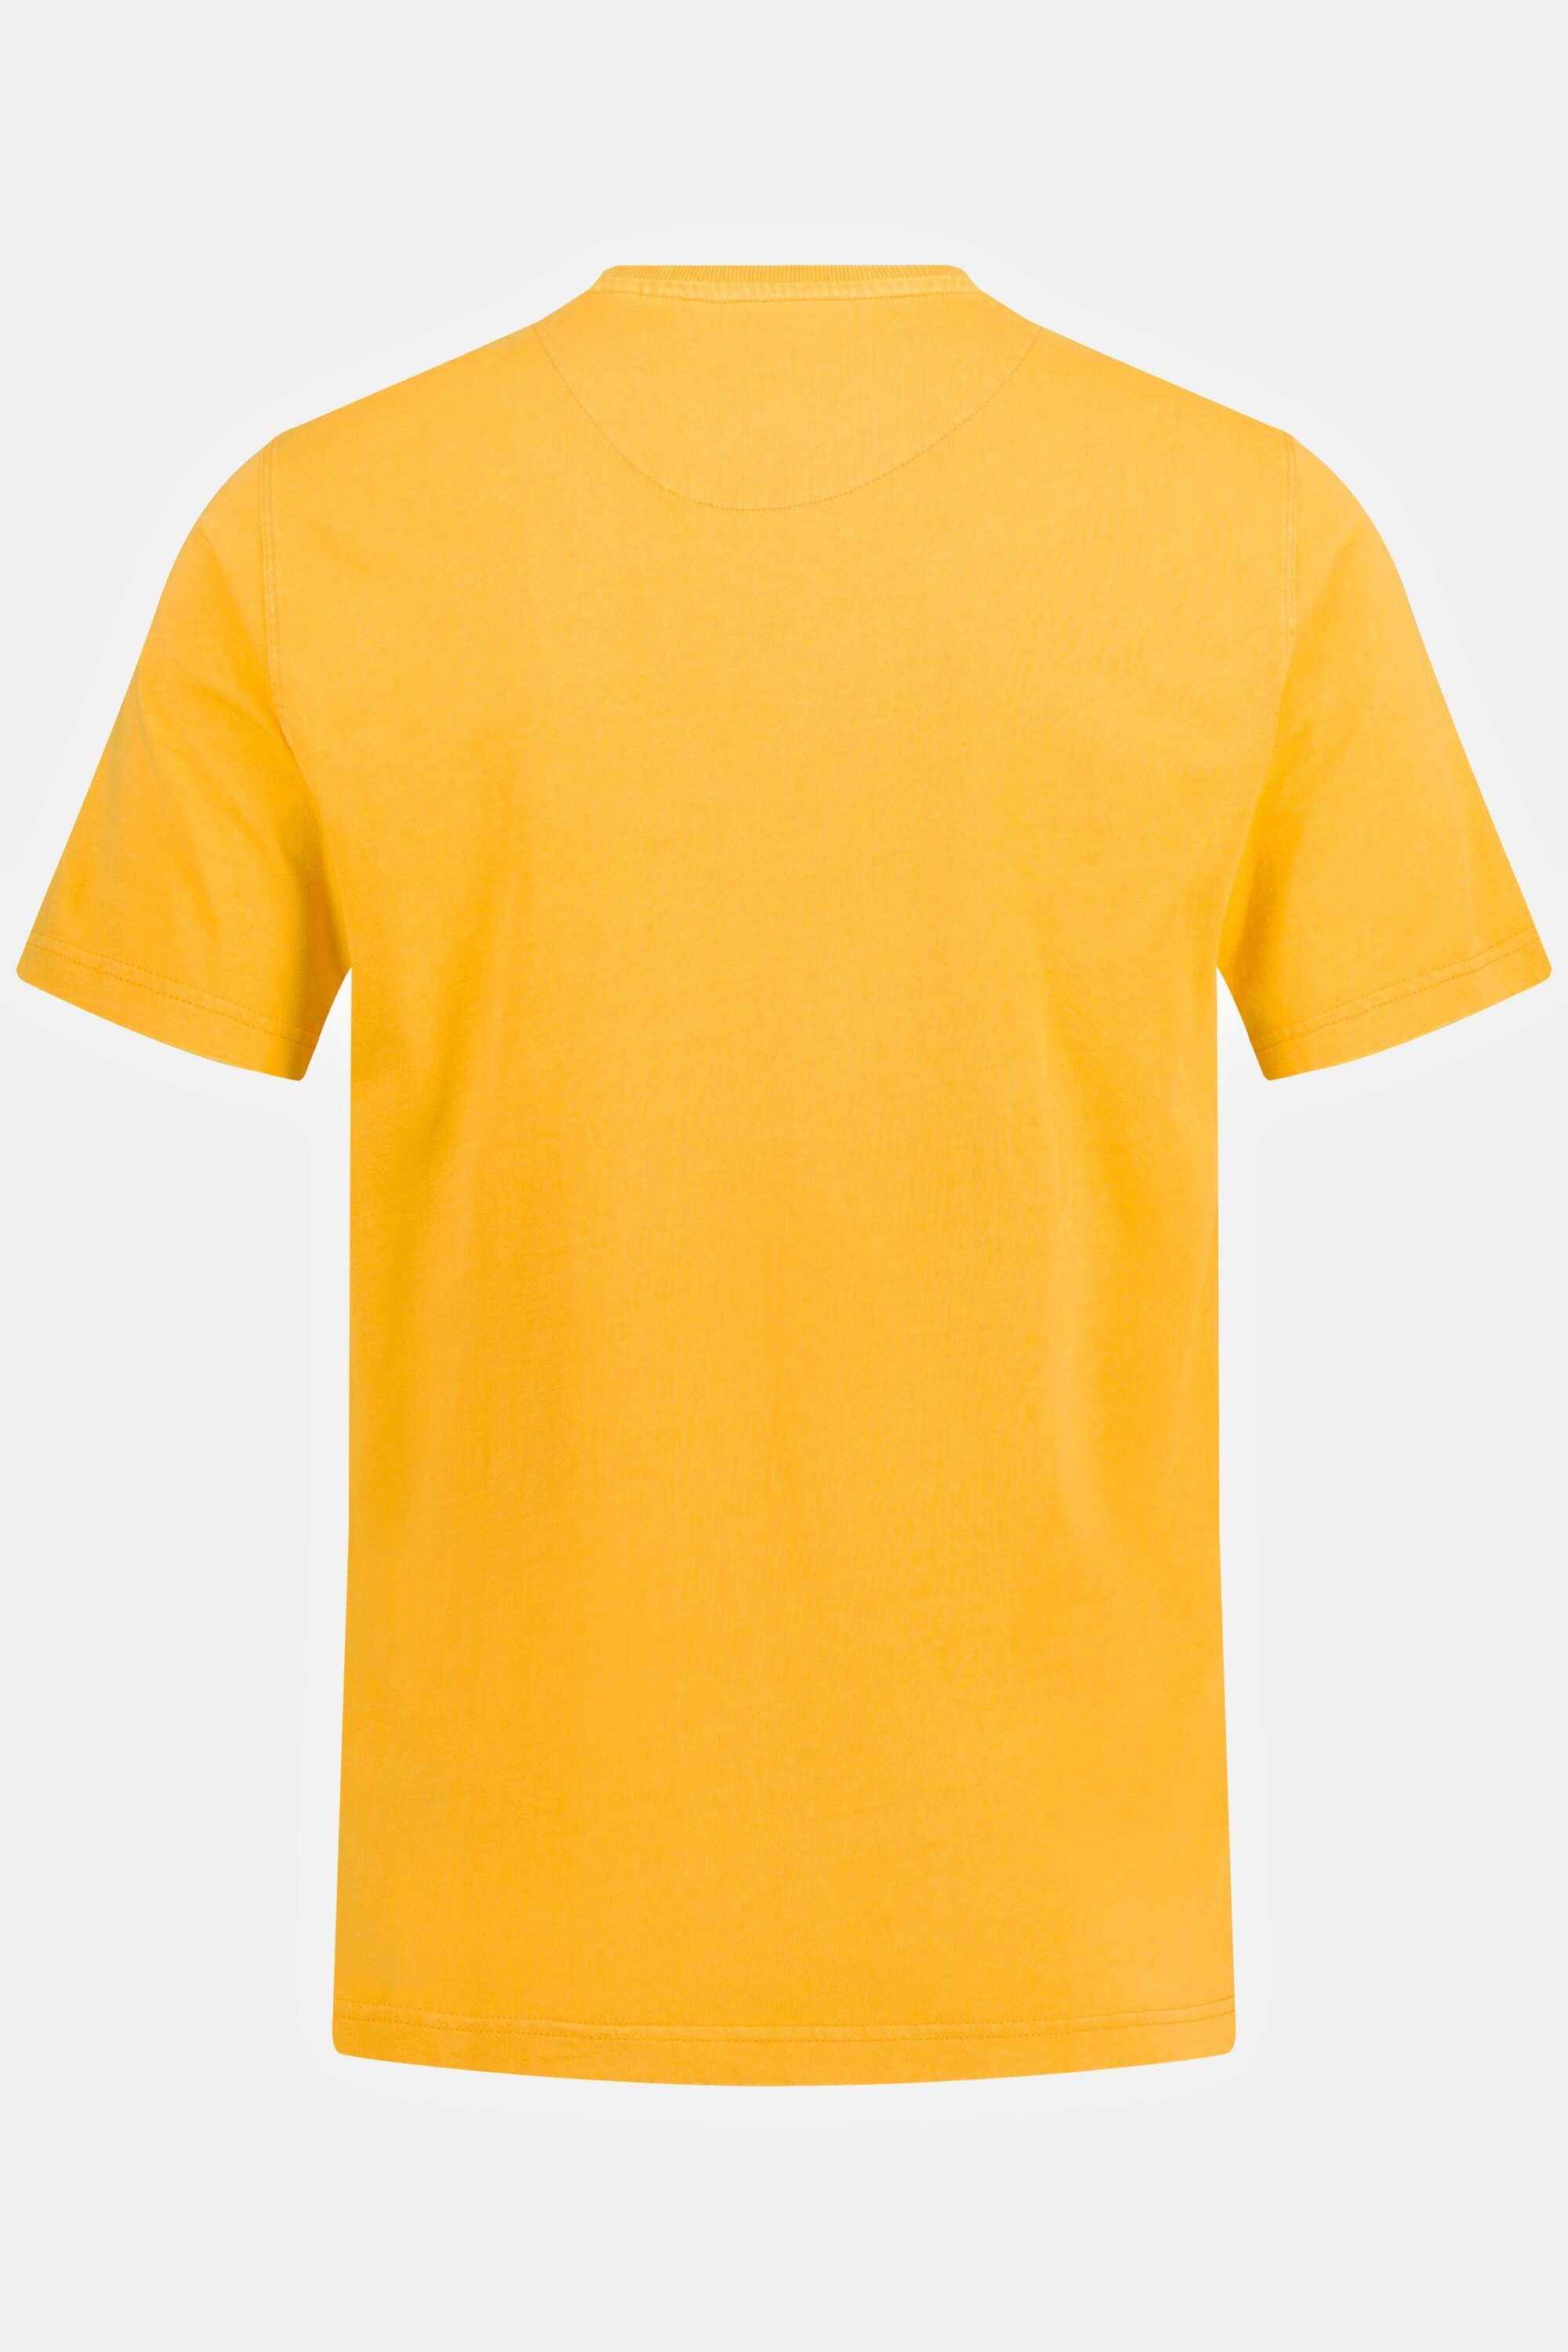 JP1880 T-Shirt T-Shirt Halbarm orange Rundhals Brusttasche